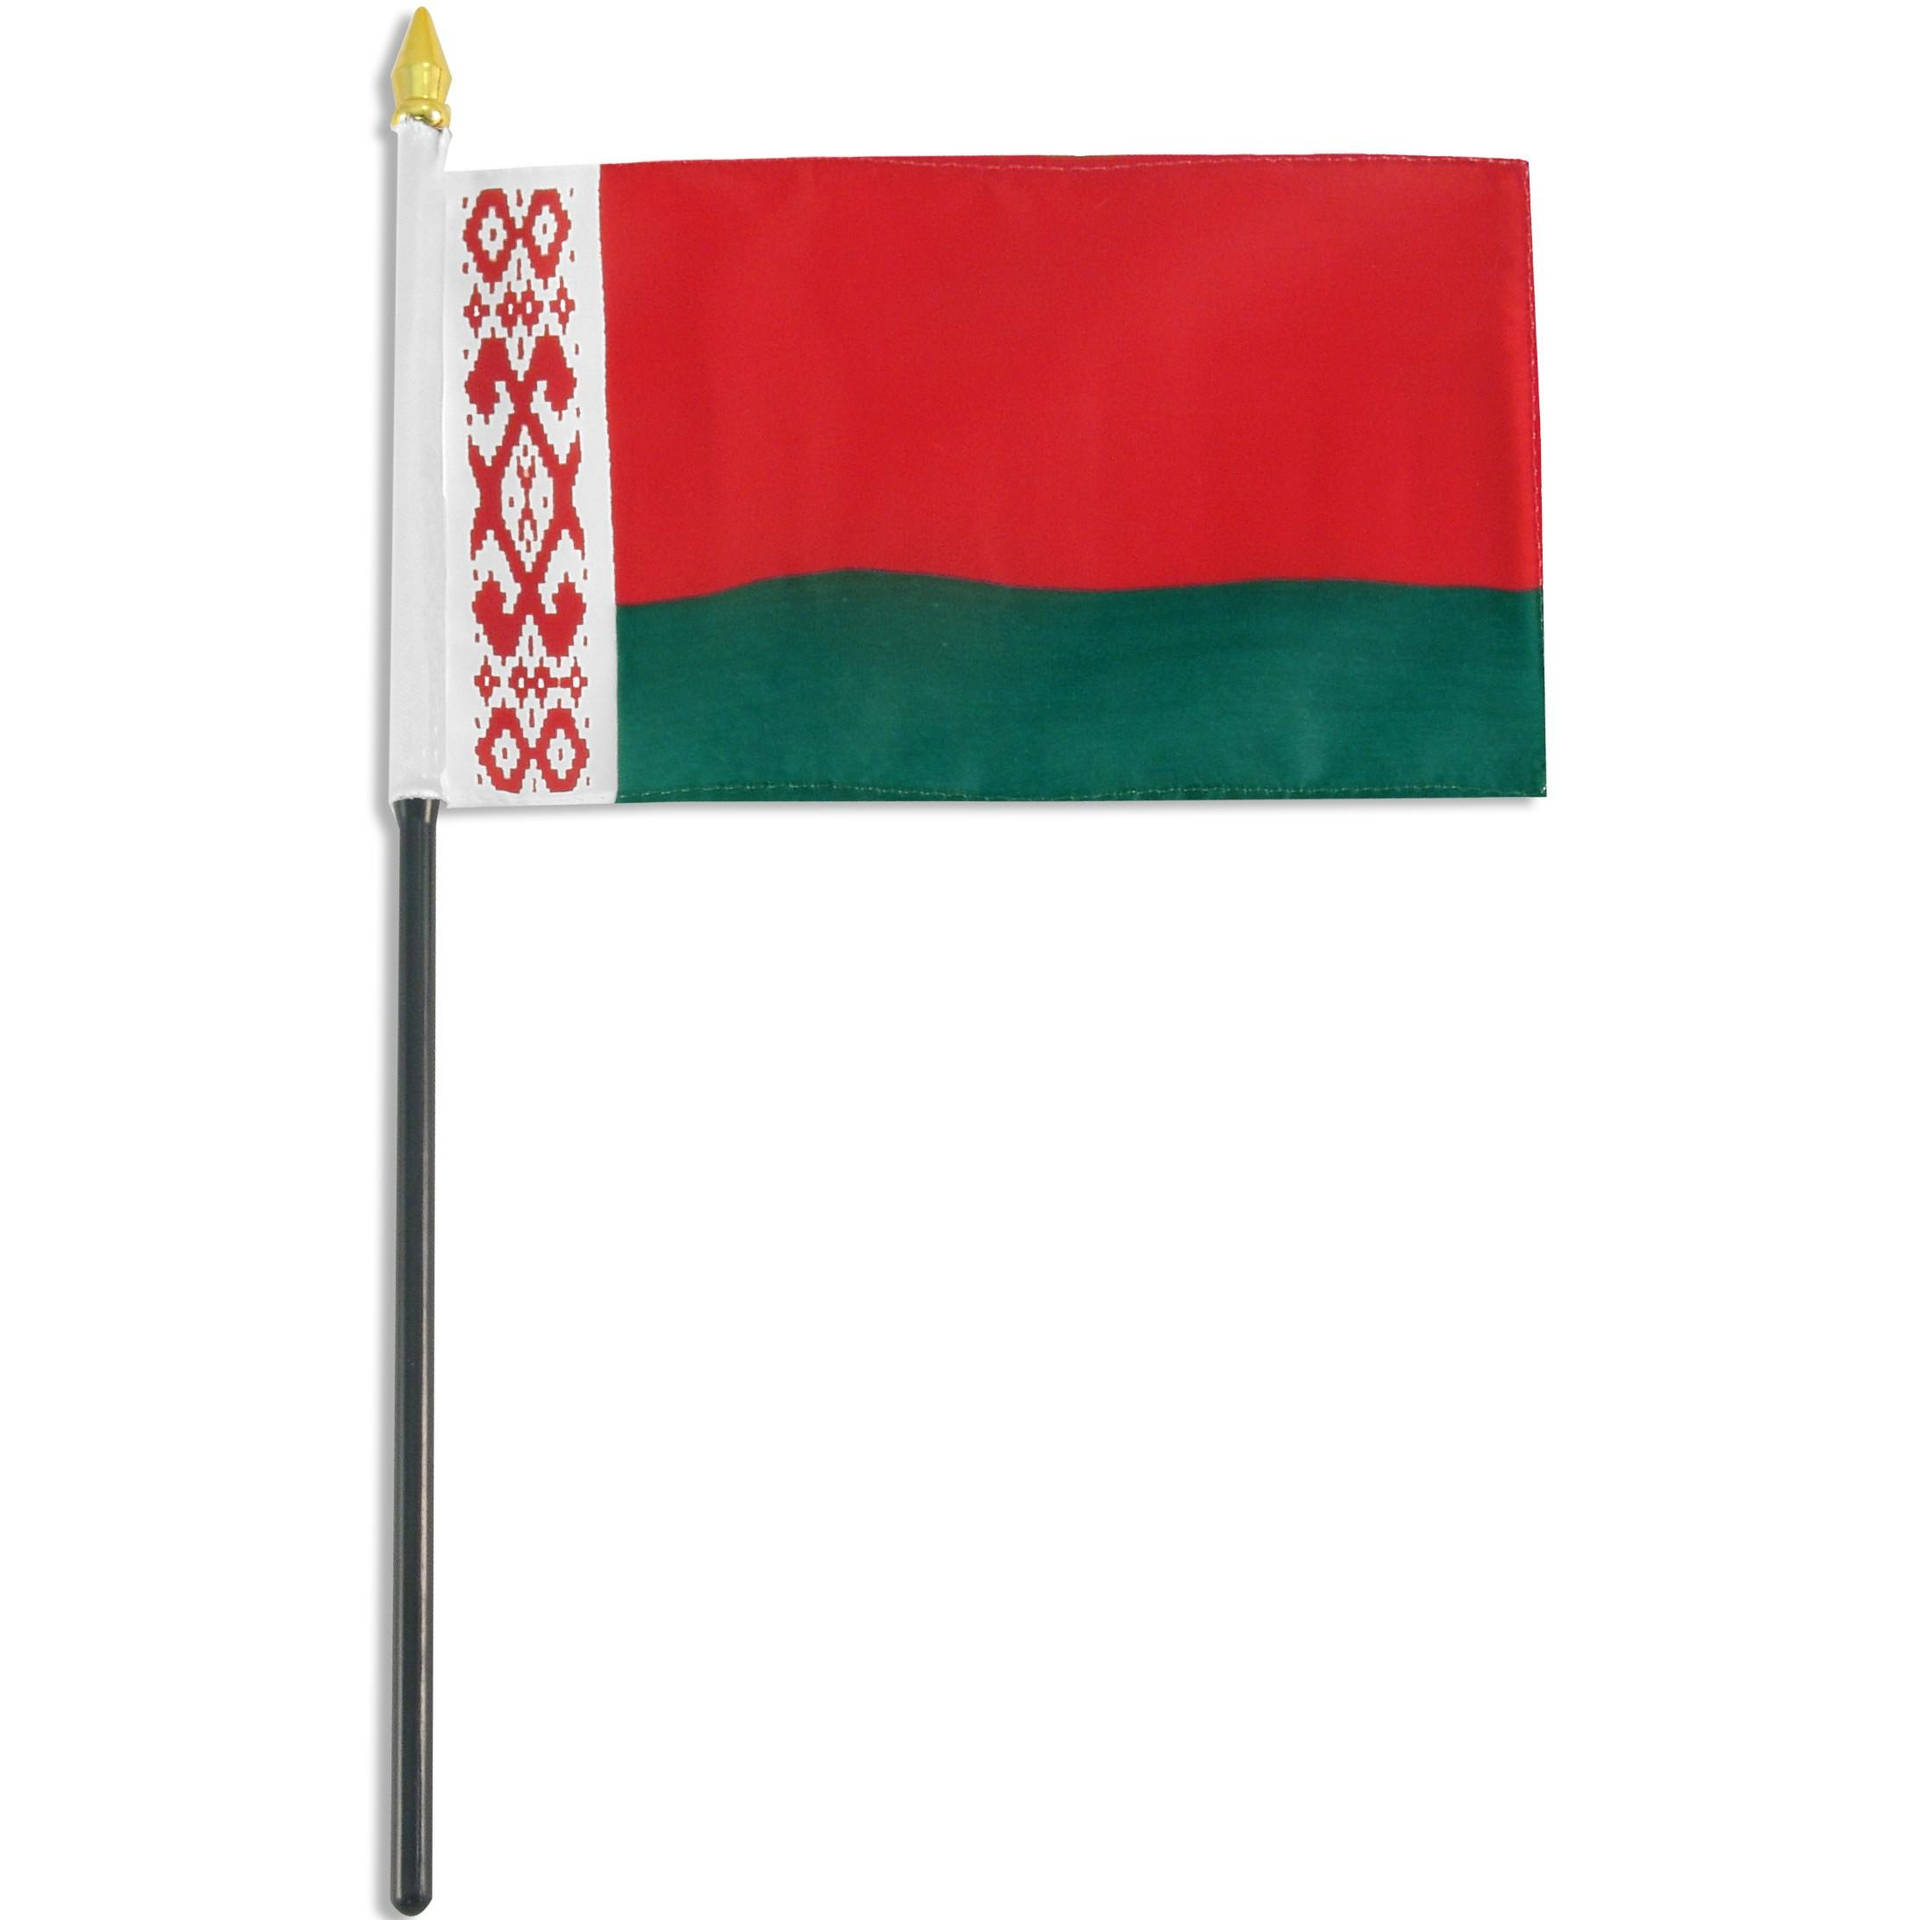 Belarus Flagpole Wallpaper